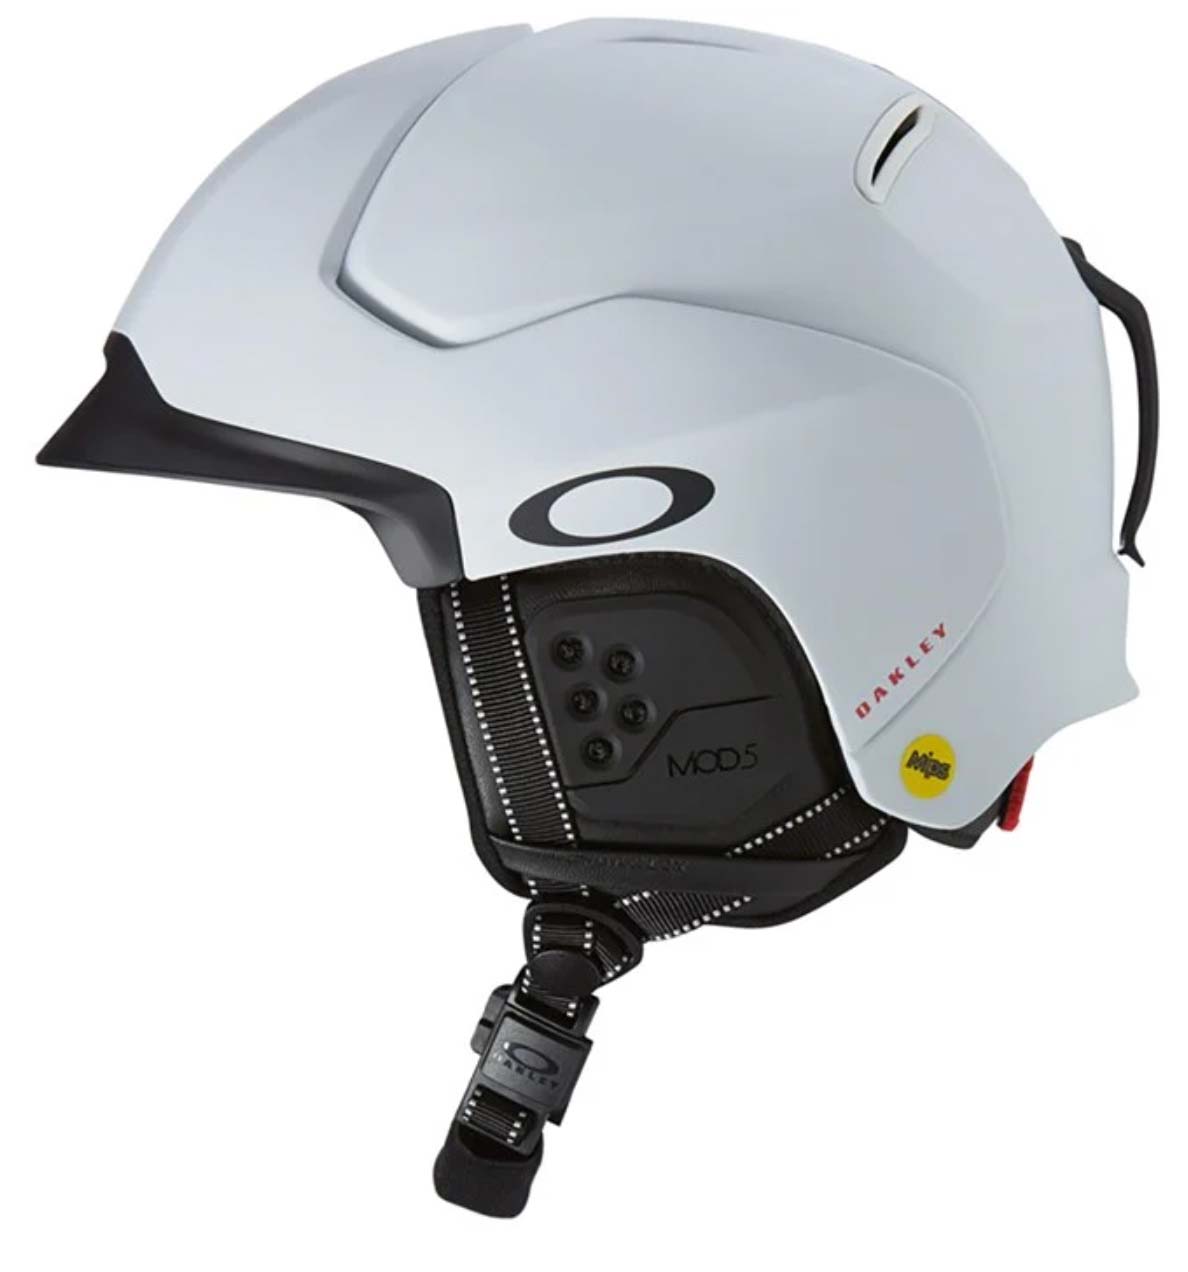 Oakley MOD 5 MIPS snow helmet